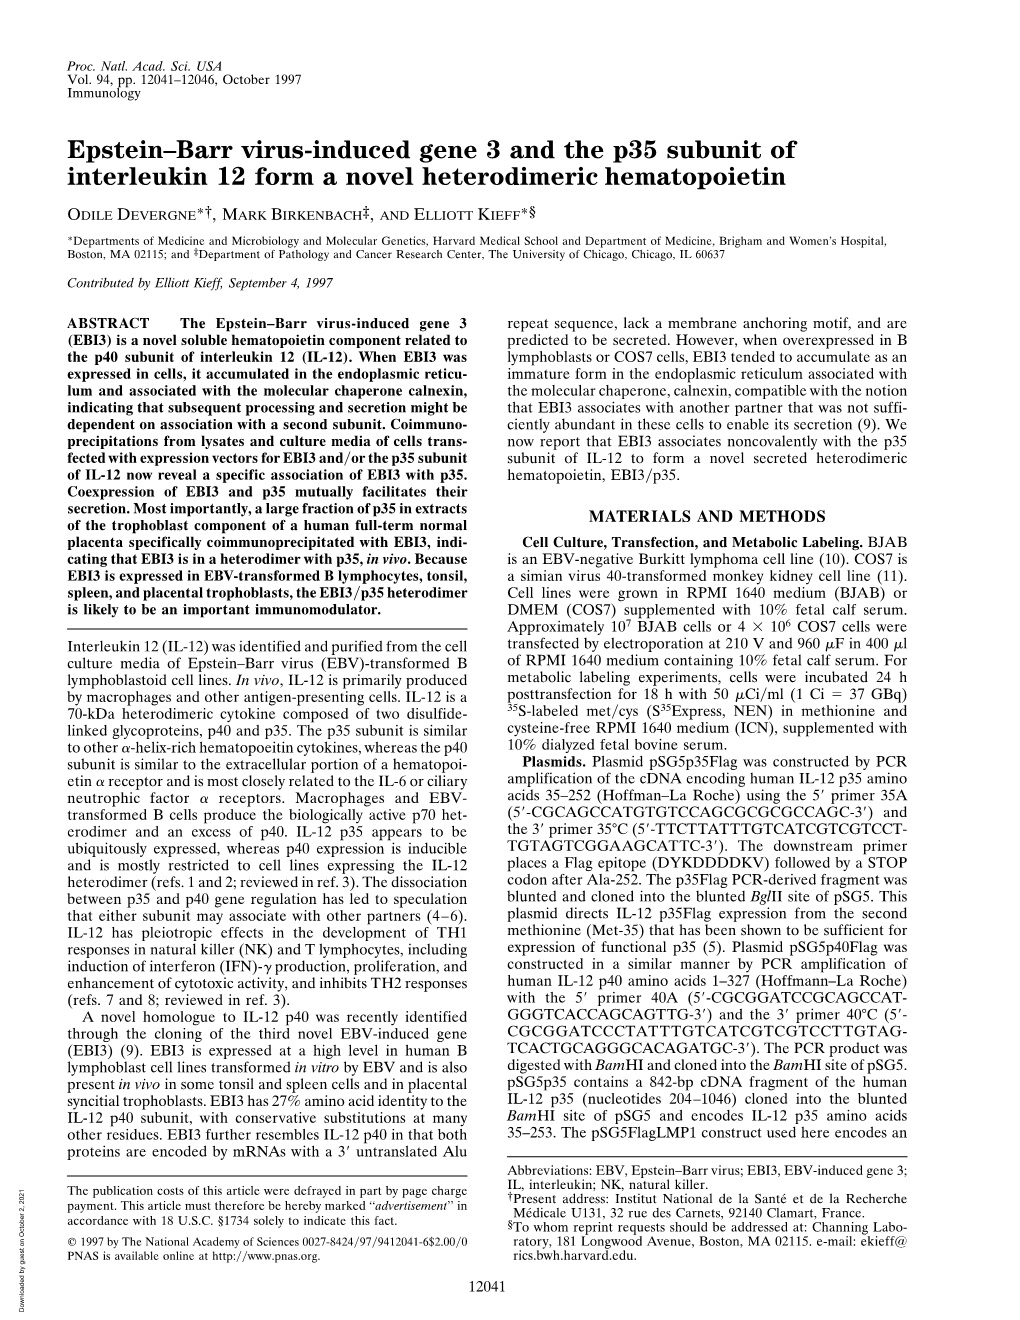 Epstein–Barr Virus-Induced Gene 3 and the P35 Subunit of Interleukin 12 Form a Novel Heterodimeric Hematopoietin